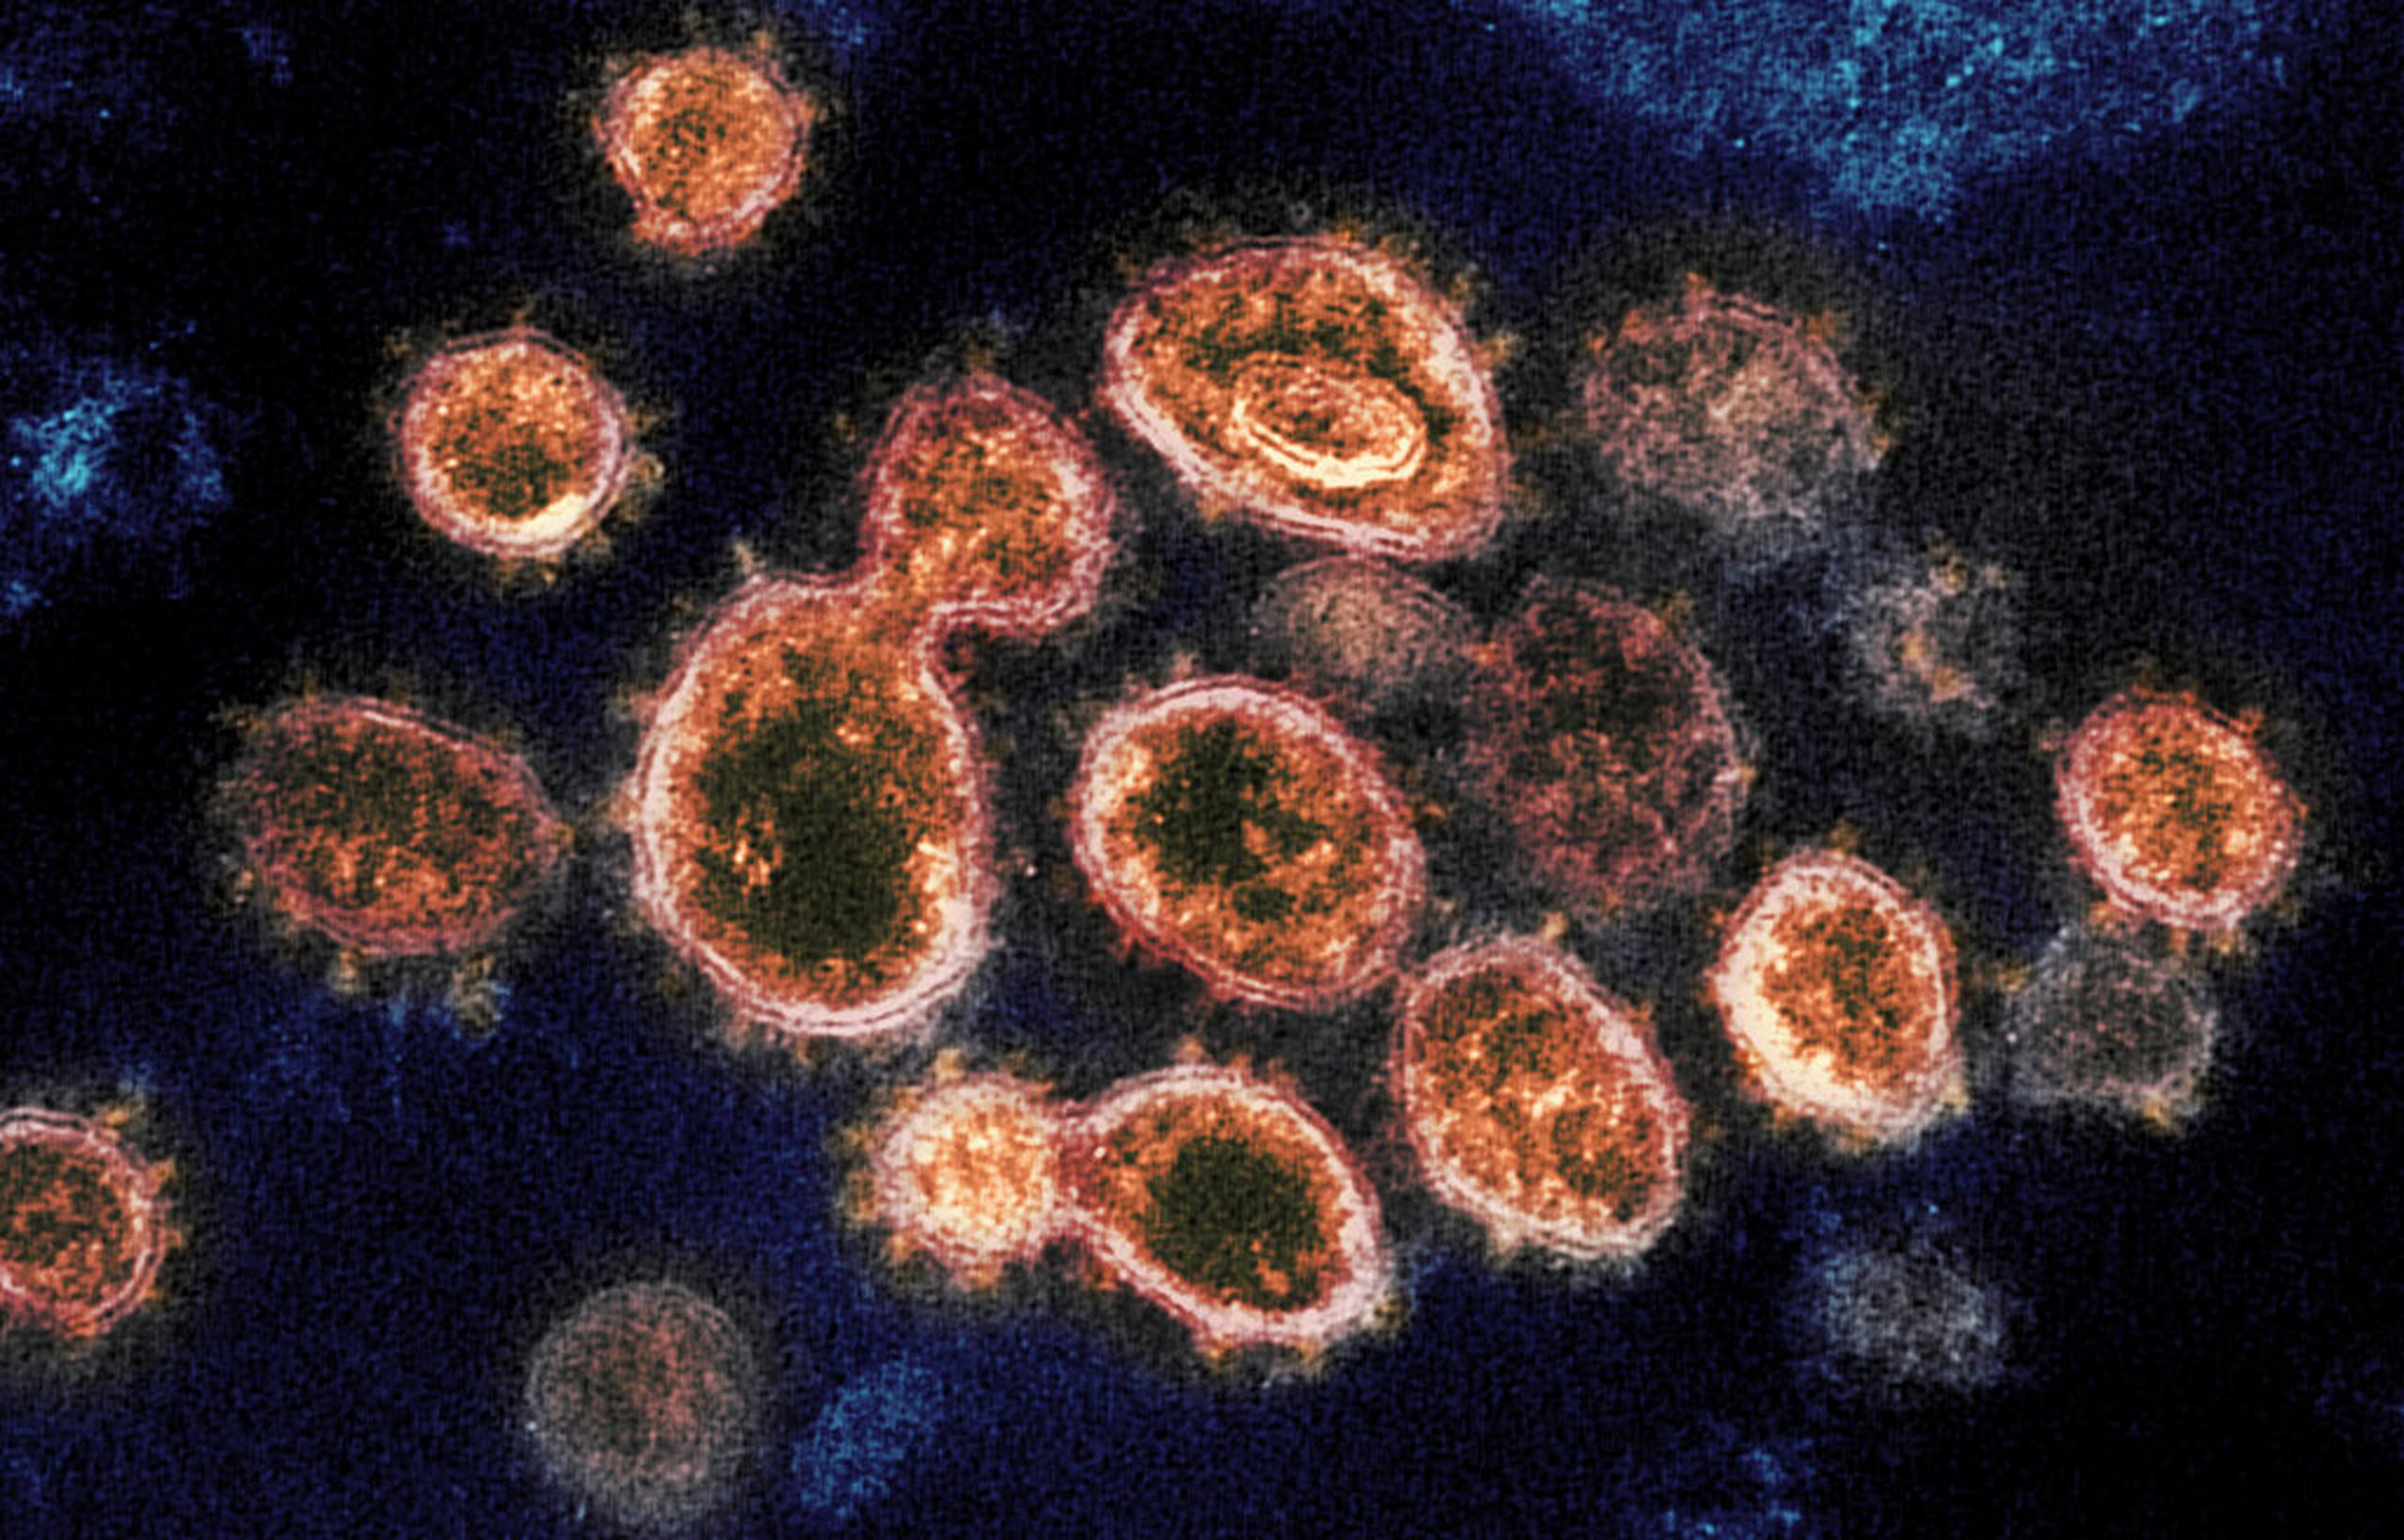 Imagen de microscopio que muestra partículas del virus SARS-CoV-2 que causan COVID-19, aisladas de un paciente.